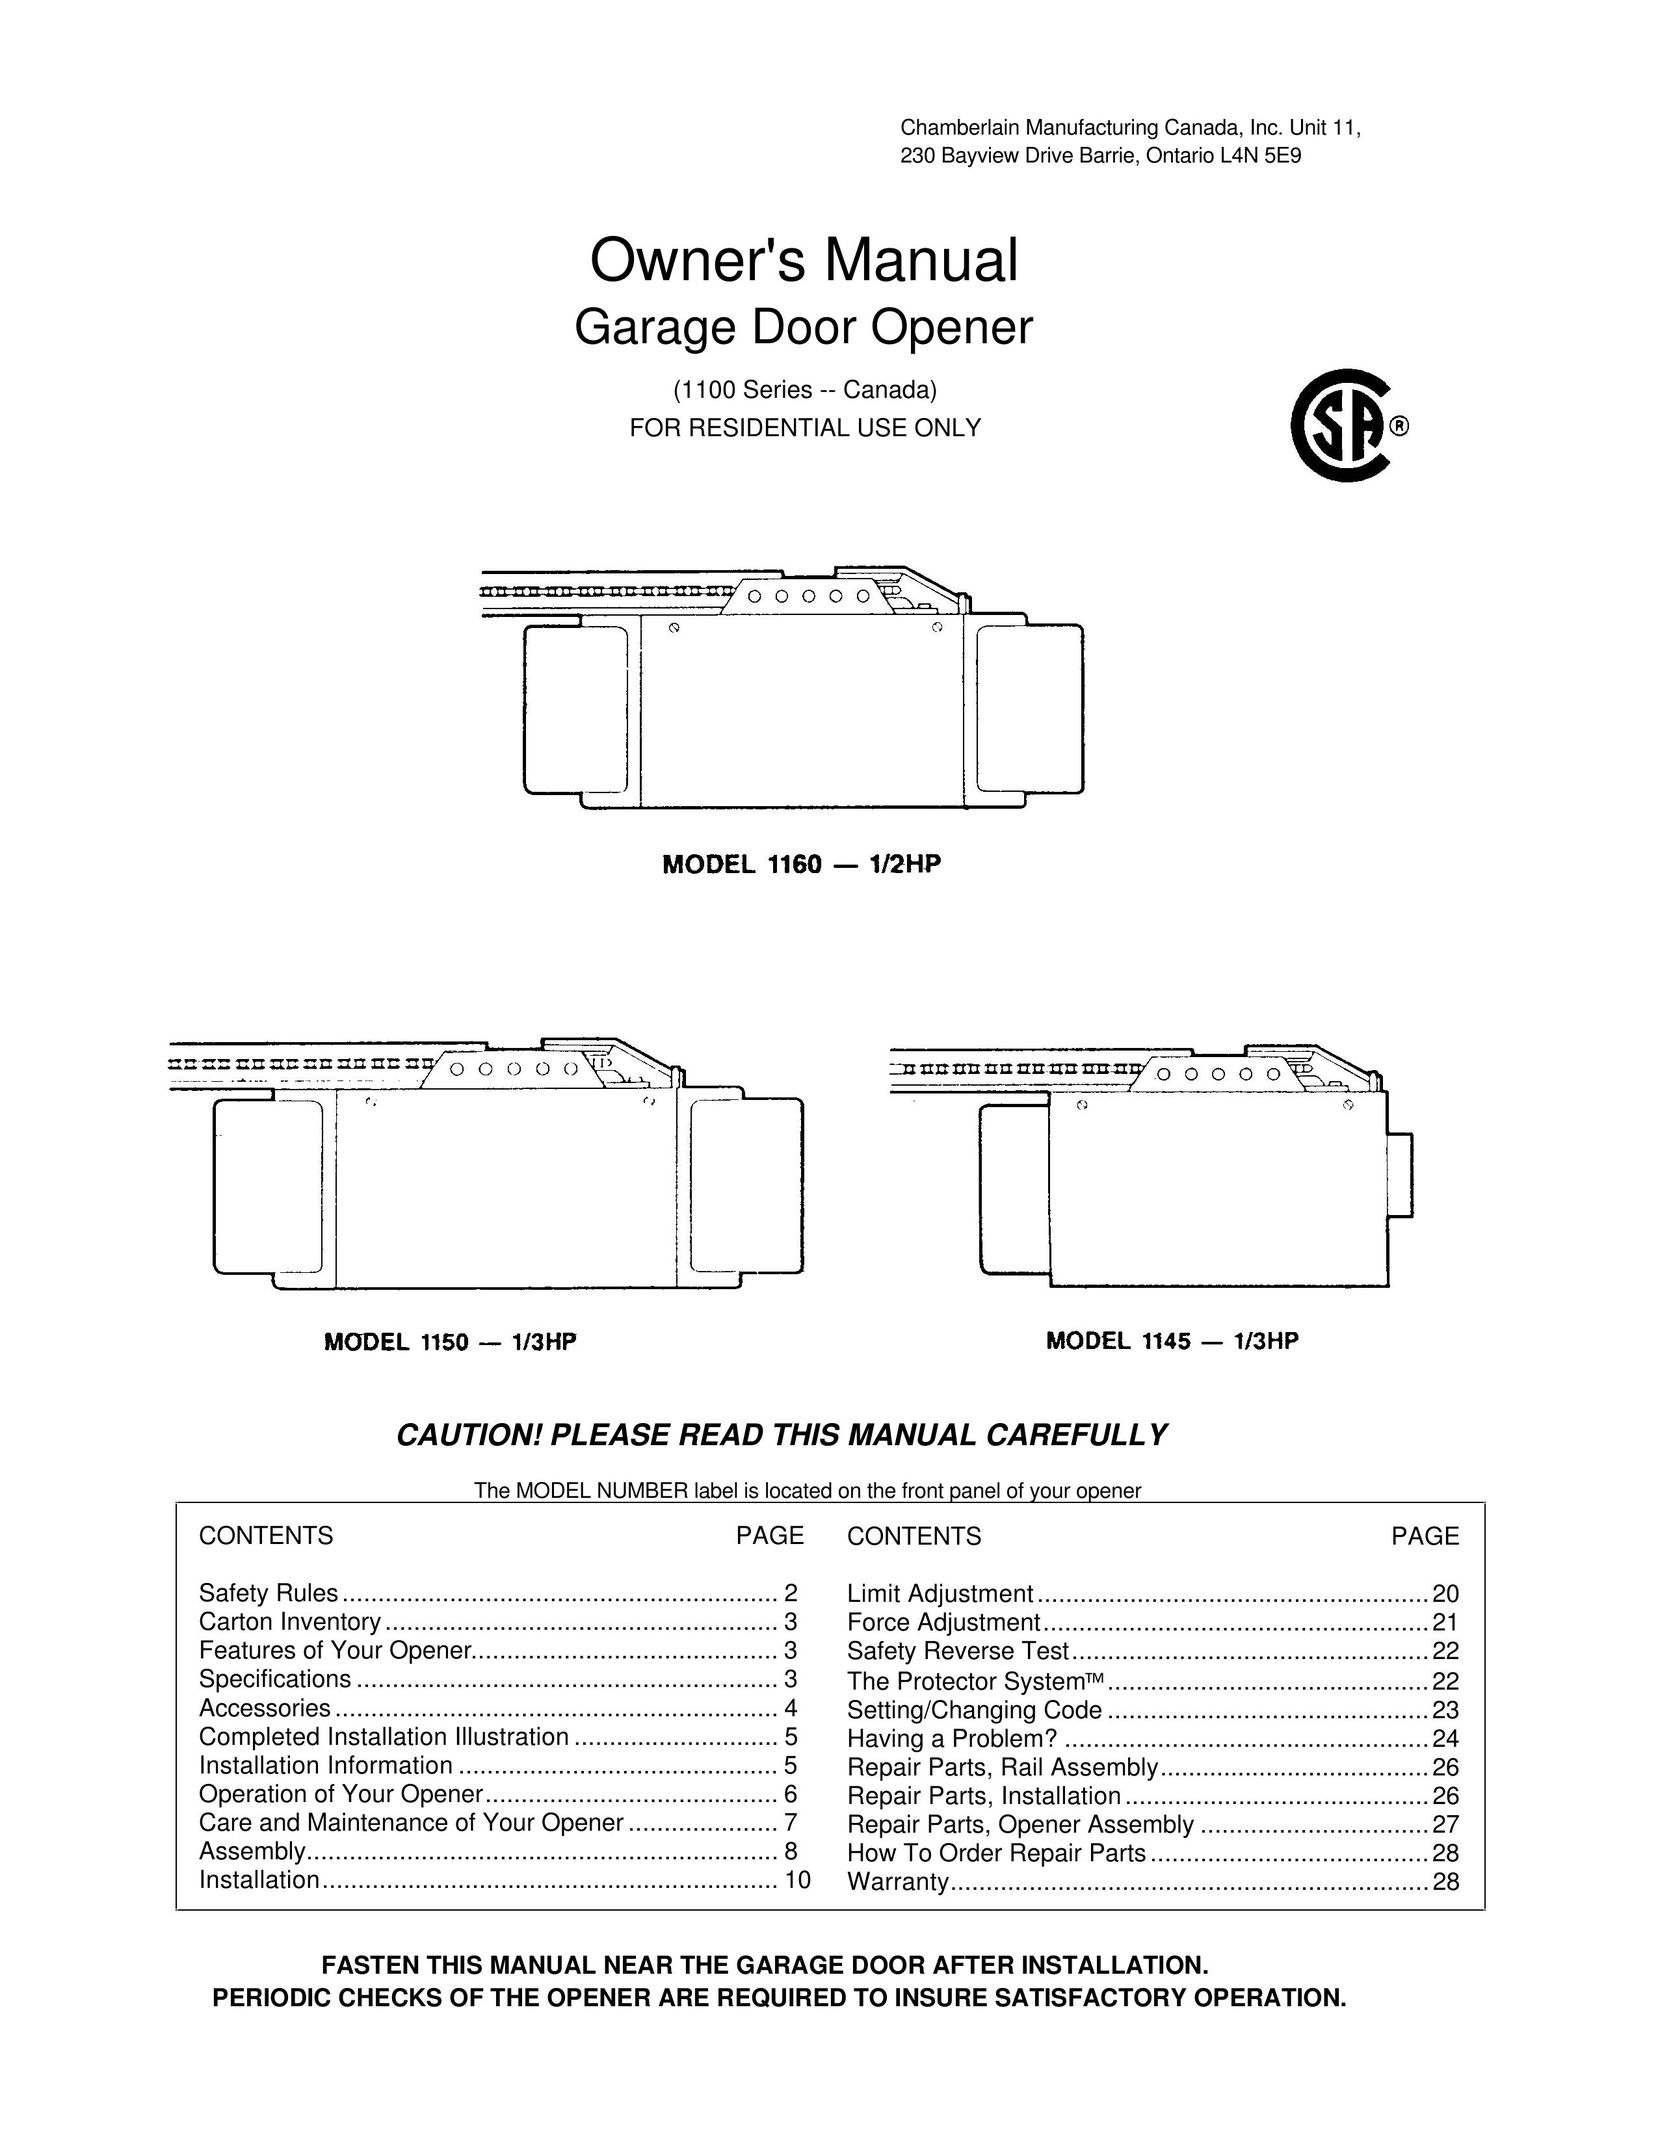 Chamberlain 1150-1/3HP Garage Door Opener User Manual